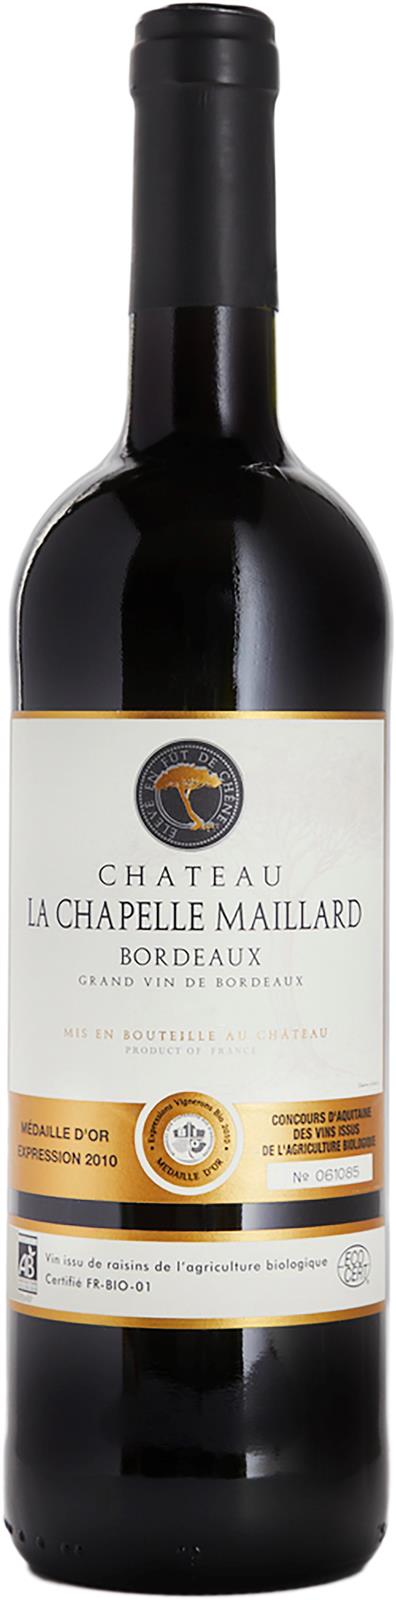 Château La Chapelle Maillard Bordeaux Rouge 2018 (France)